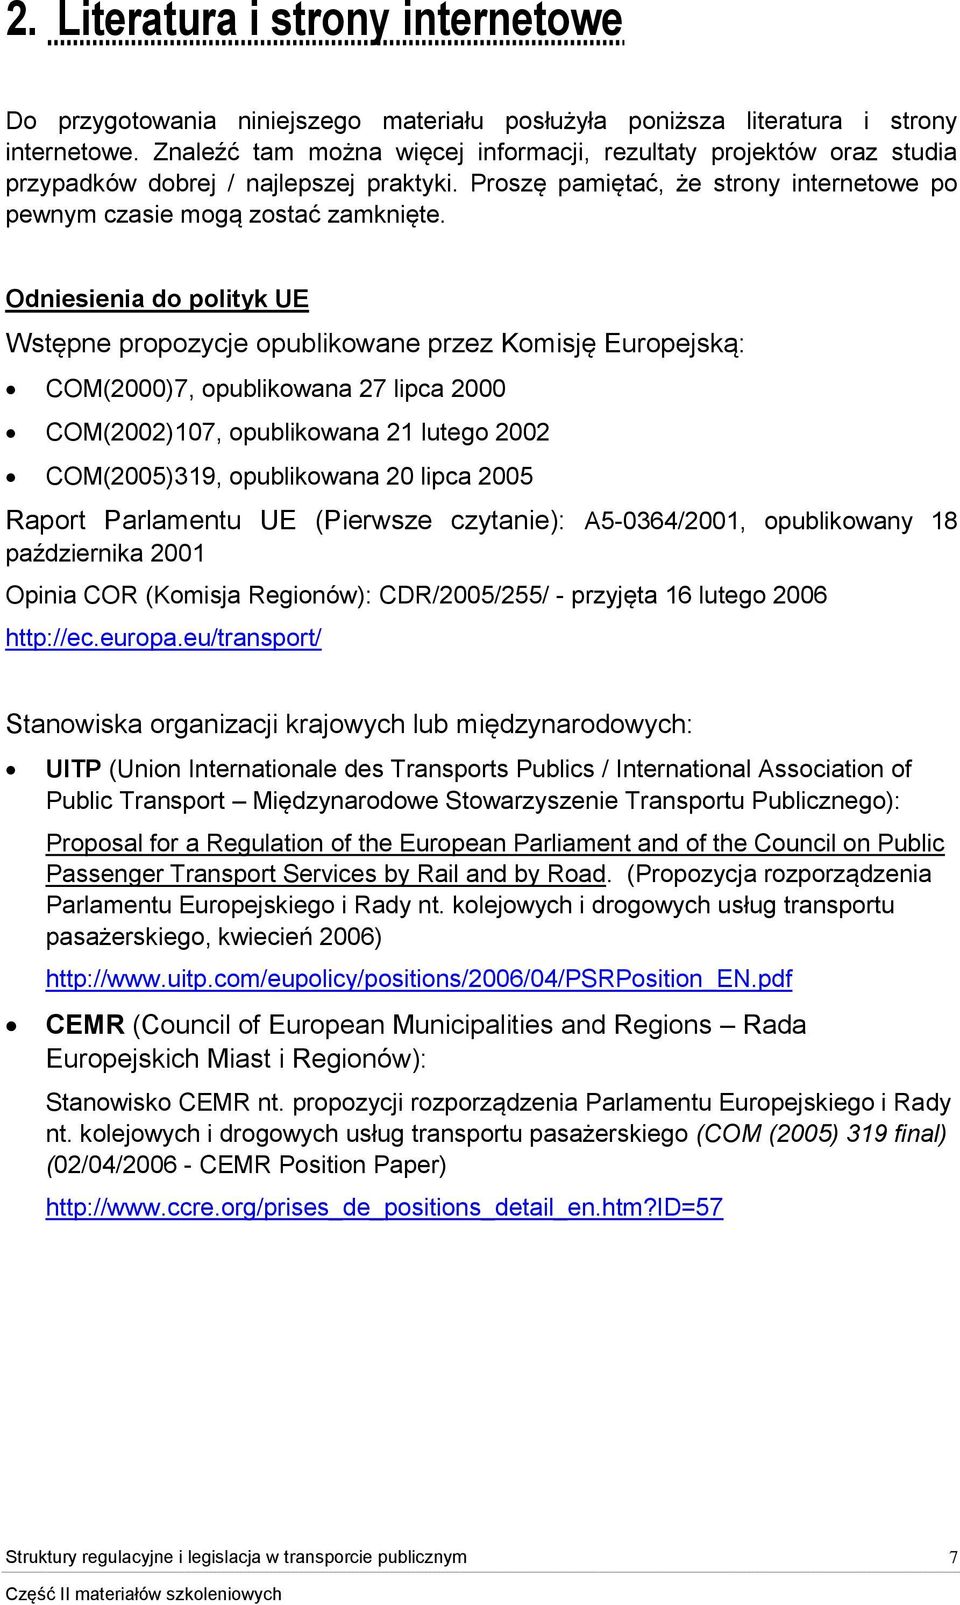 Odniesienia do polityk UE Wstępne propozycje opublikowane przez Komisję Europejską: COM(2000)7, opublikowana 27 lipca 2000 COM(2002)107, opublikowana 21 lutego 2002 COM(2005)319, opublikowana 20